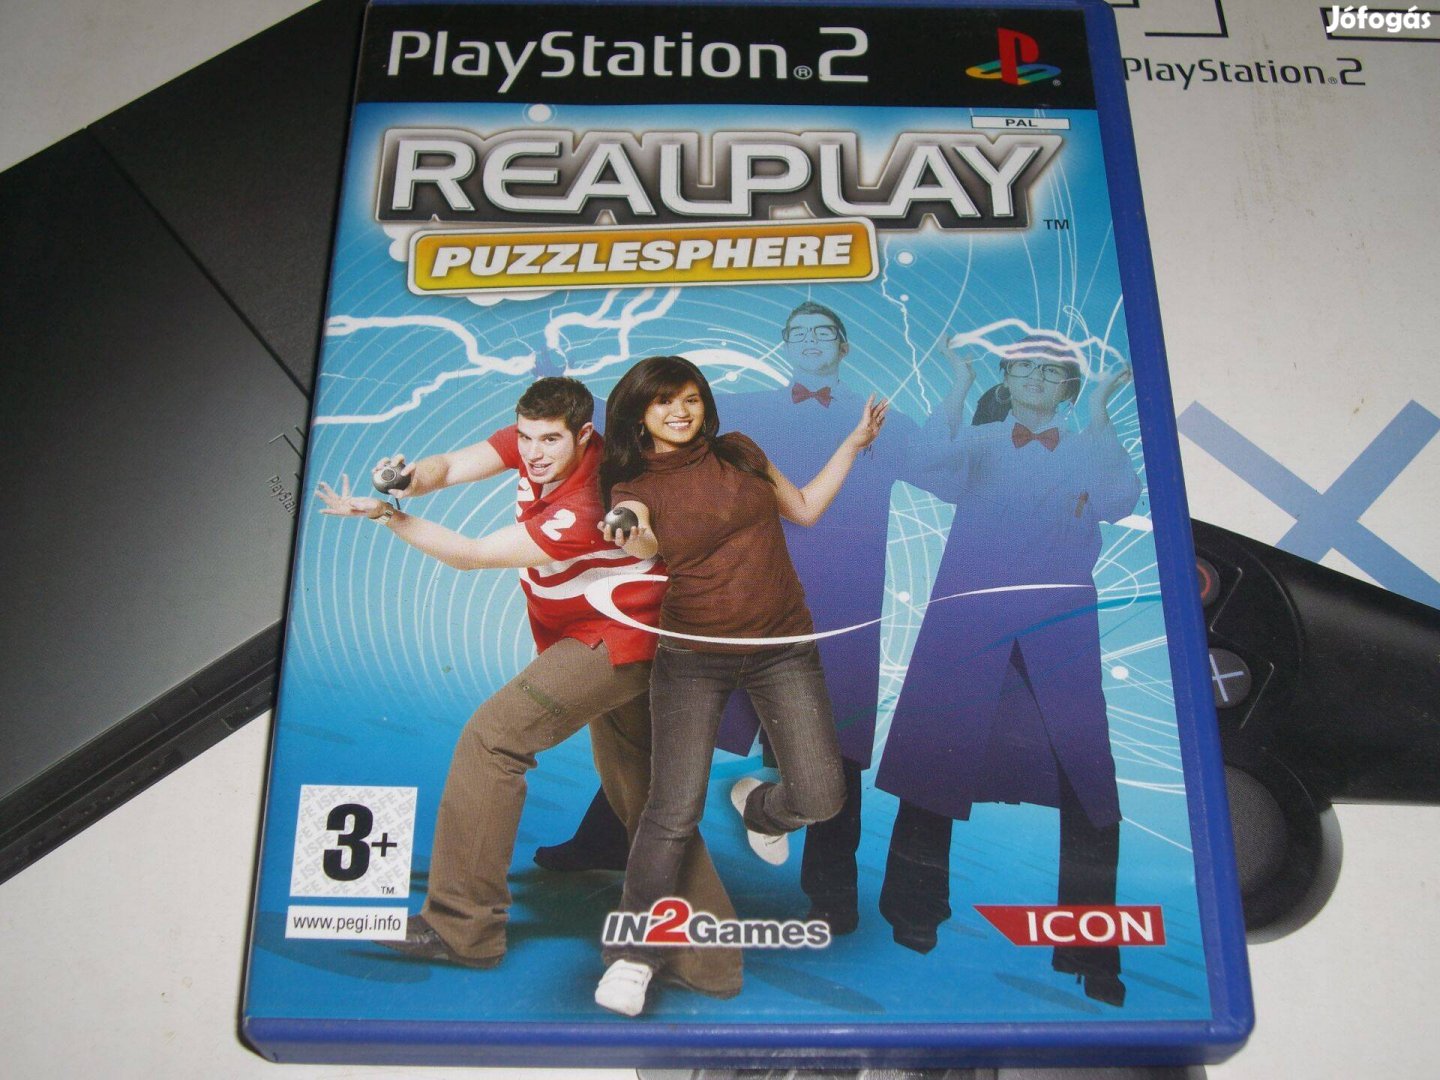 Realplay Puzzlesphere Playstation 2 eredeti lemez eladó